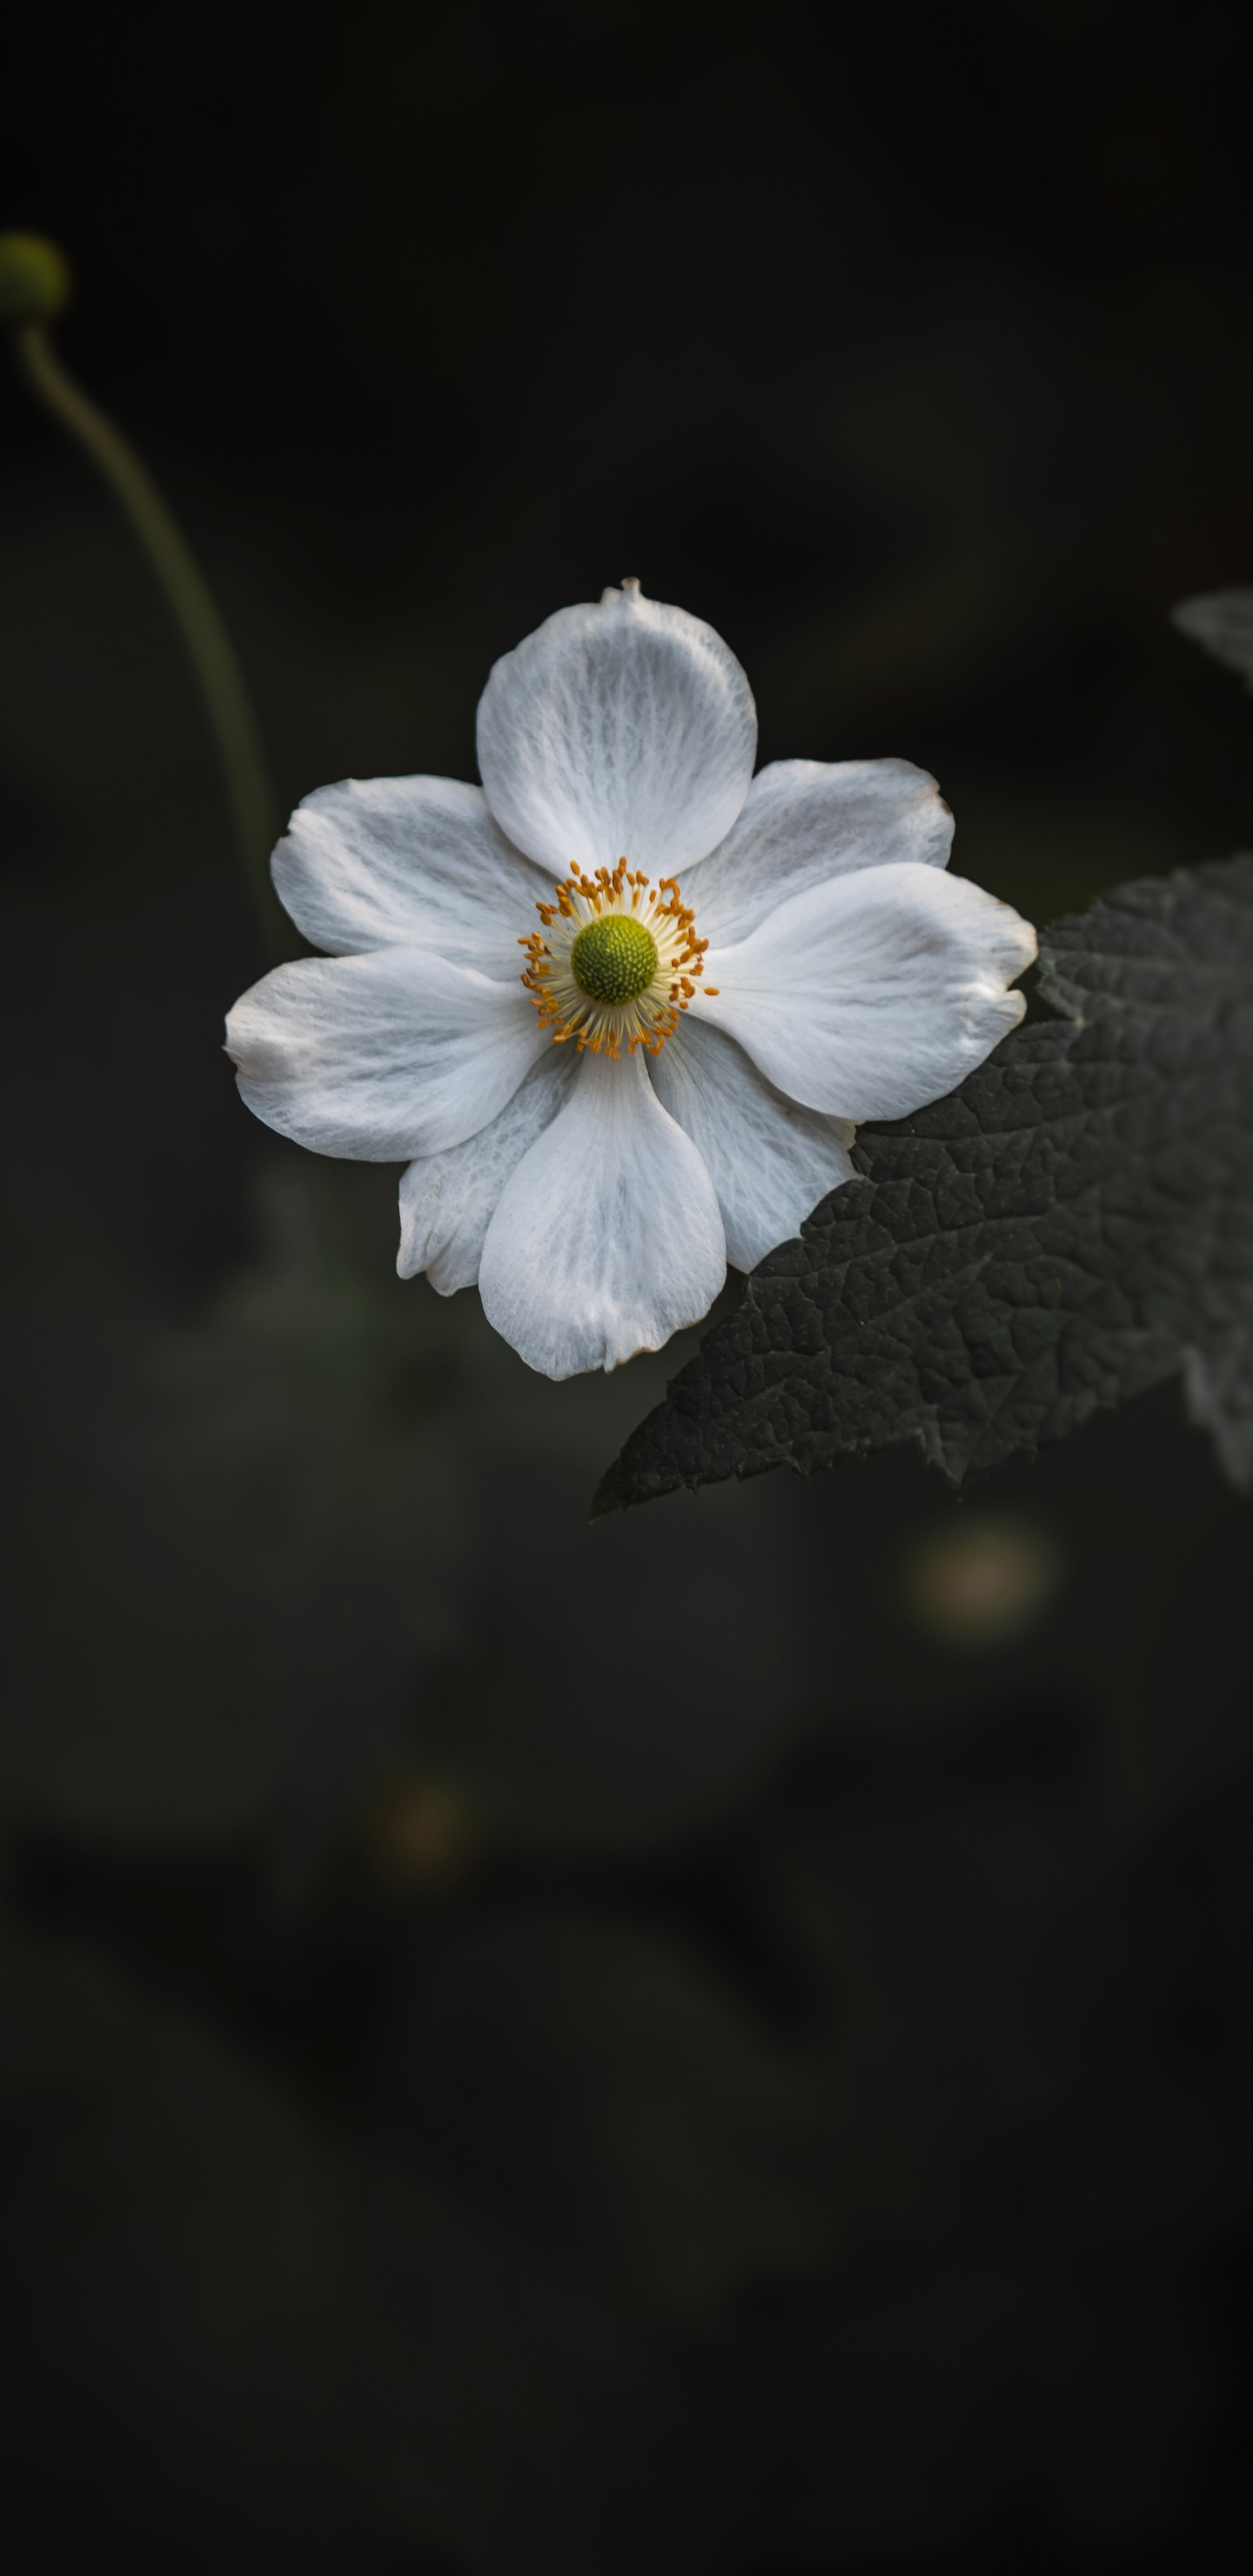 White Flower in Tilt Shift Lens. Wallpaper in 1440x2960 Resolution